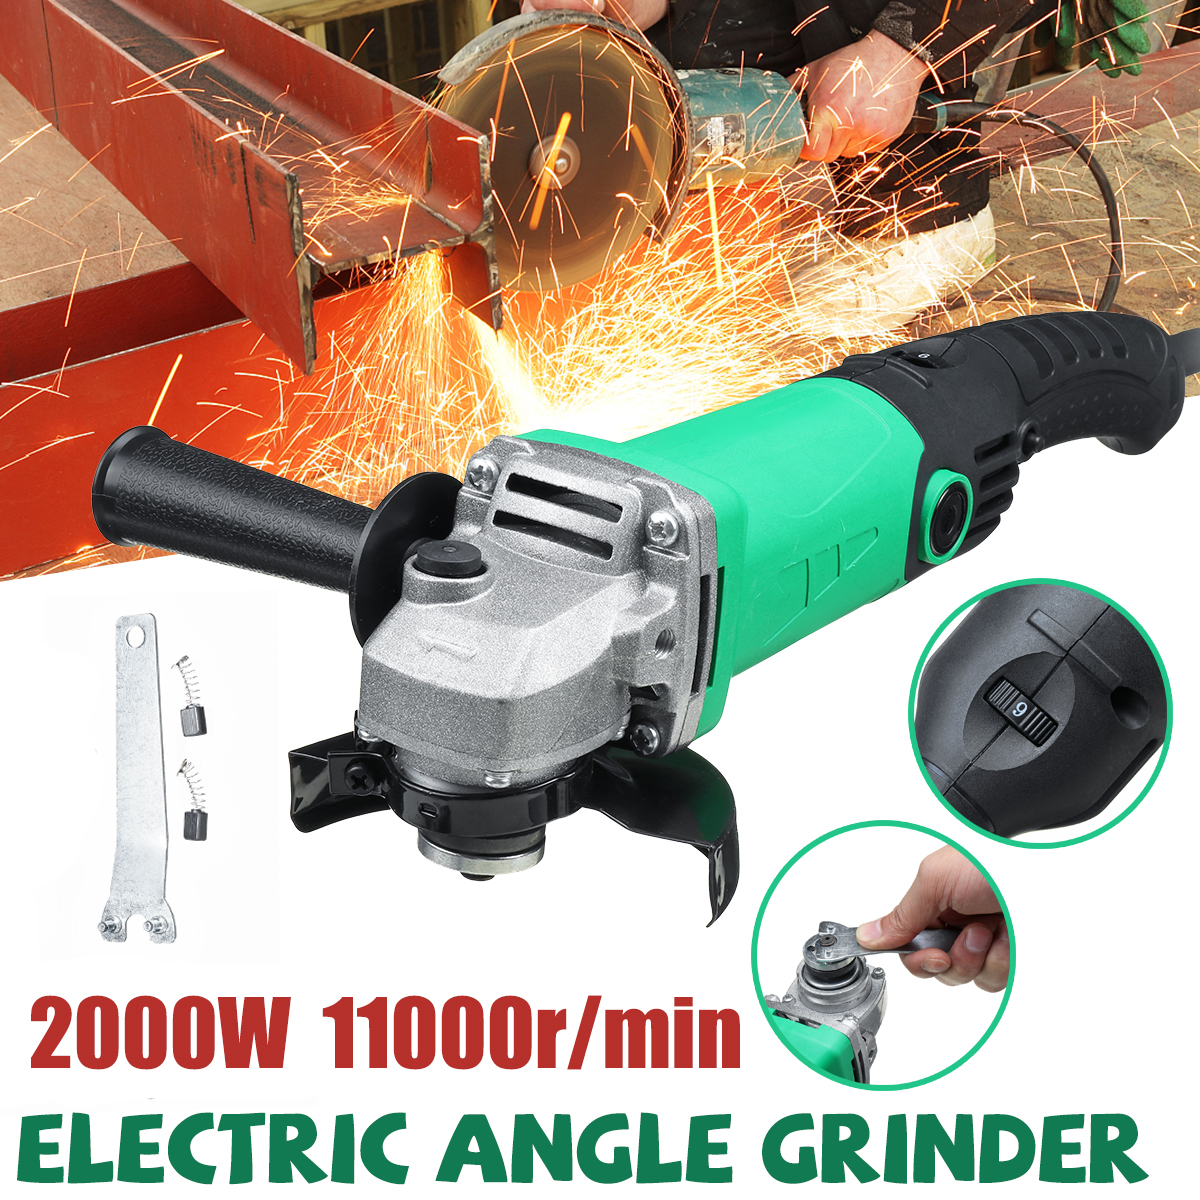 2000W-220V-Electric-Angle-Grinder-Multi-function-Sander-6-Speed-Adjustable-Polisher-Grinding-Machine-1613388-1